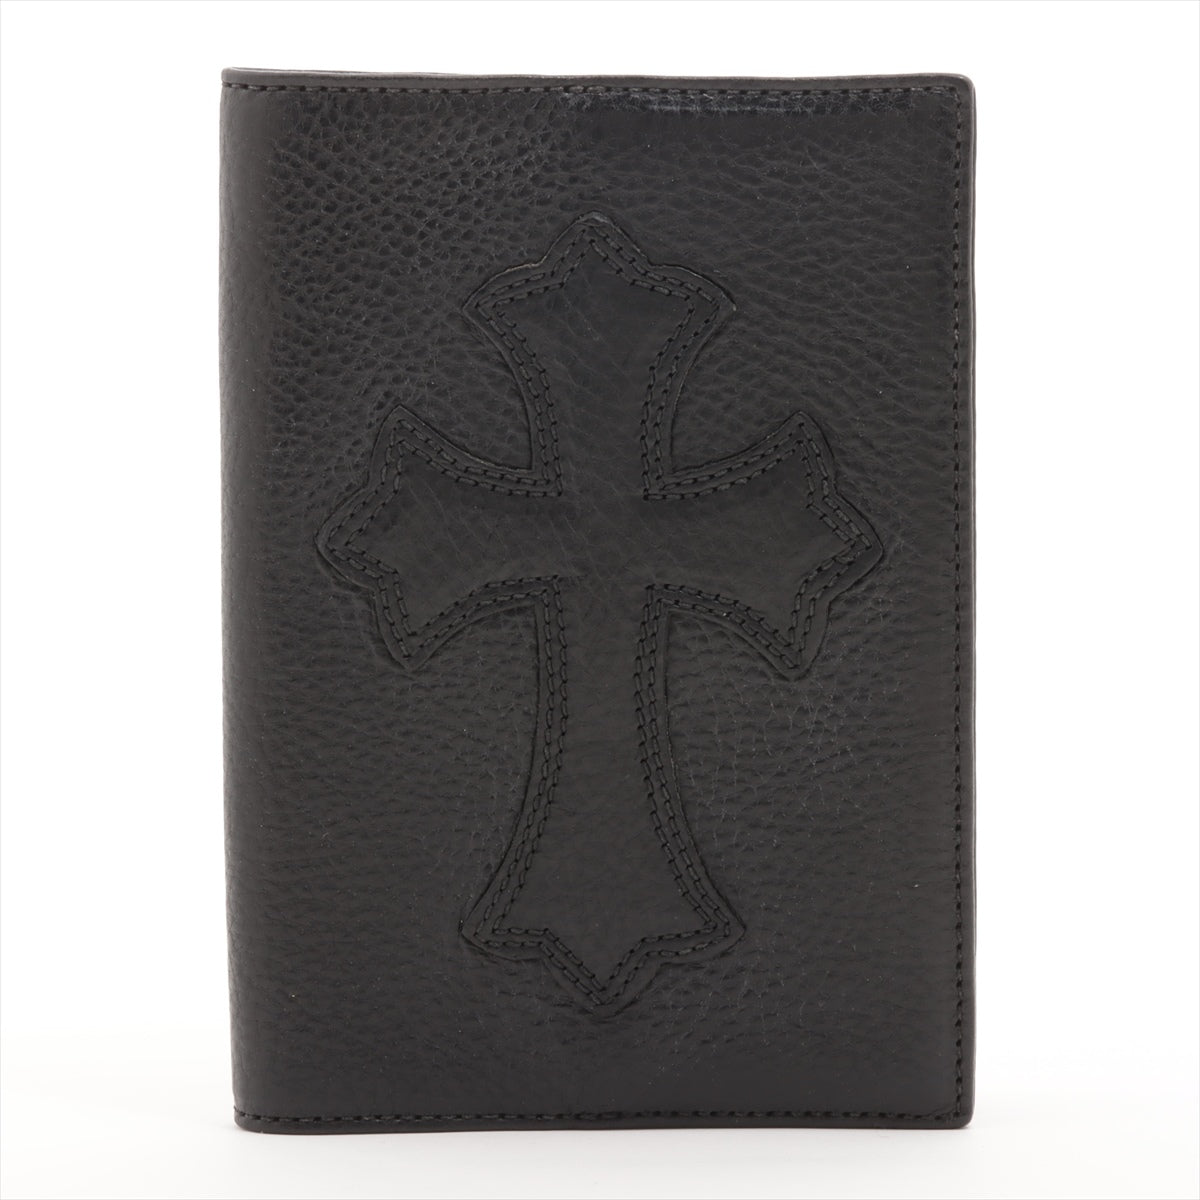 クロムハーツ パスポートケース 素材不明 インボイスアリ ブラック クロスパッチ